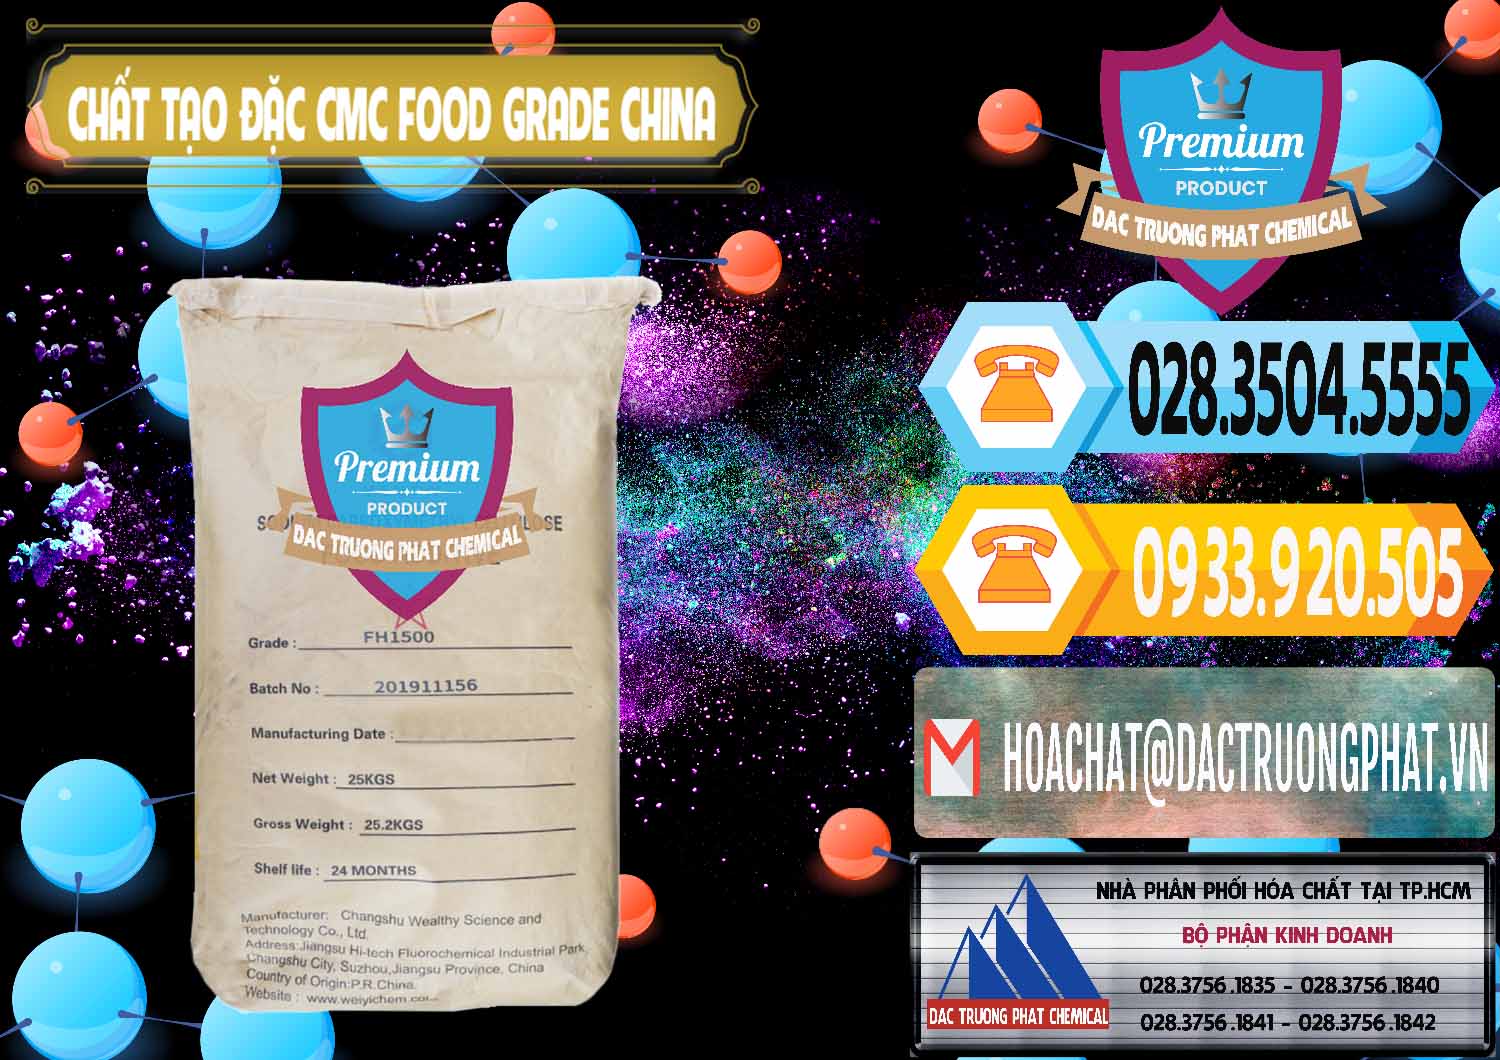 Nơi bán và phân phối Chất Tạo Đặc CMC Wealthy Food Grade Trung Quốc China - 0426 - Nơi cung cấp và phân phối hóa chất tại TP.HCM - hoachattayrua.net